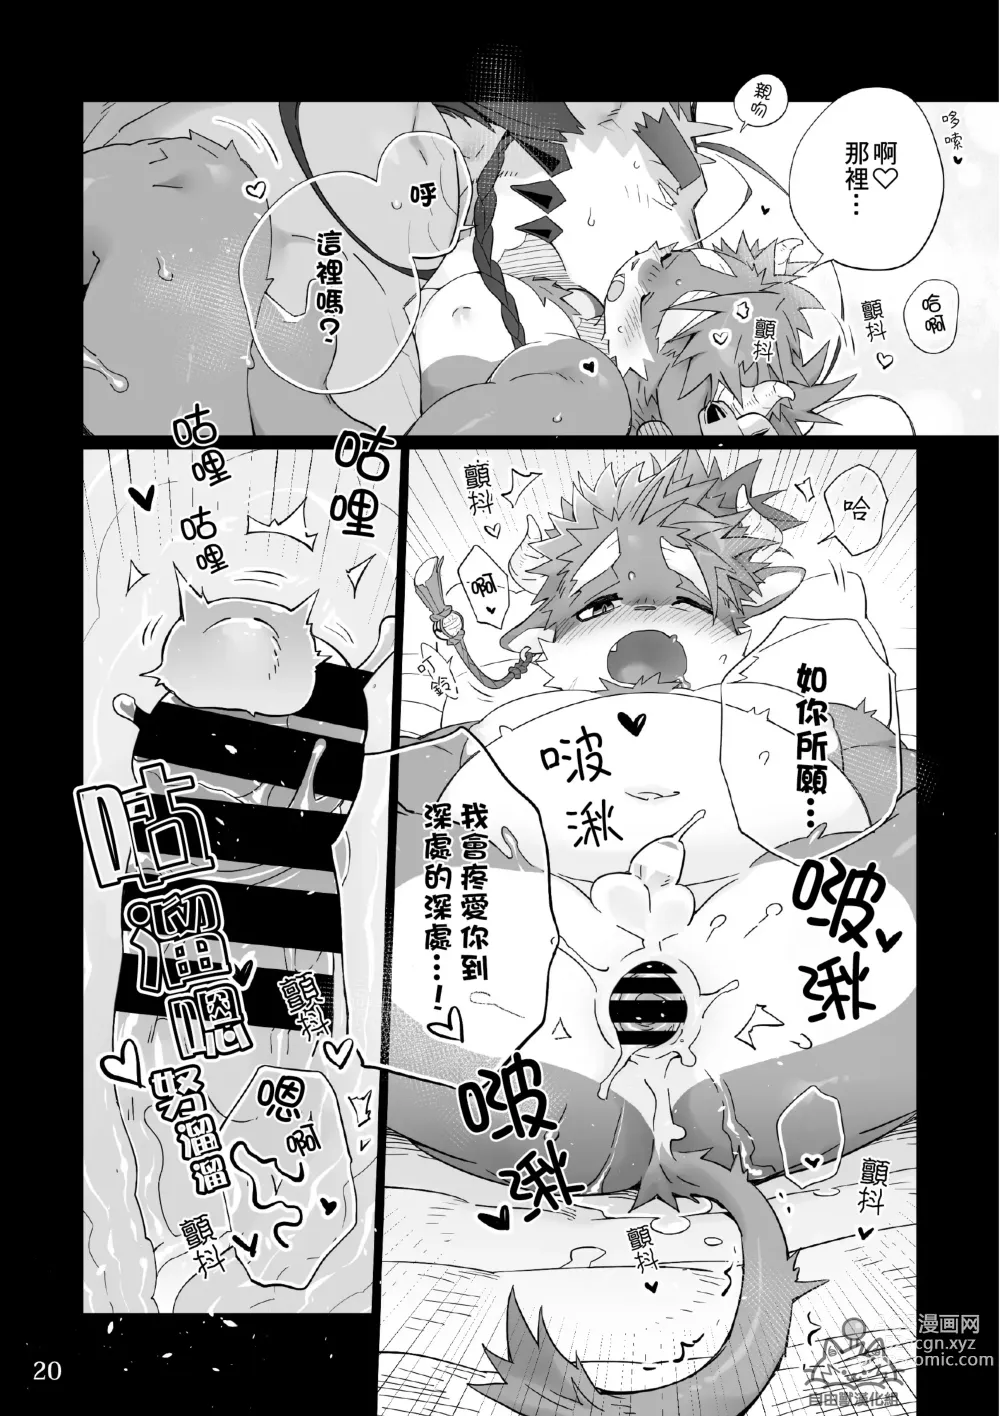 Page 19 of doujinshi Utopia